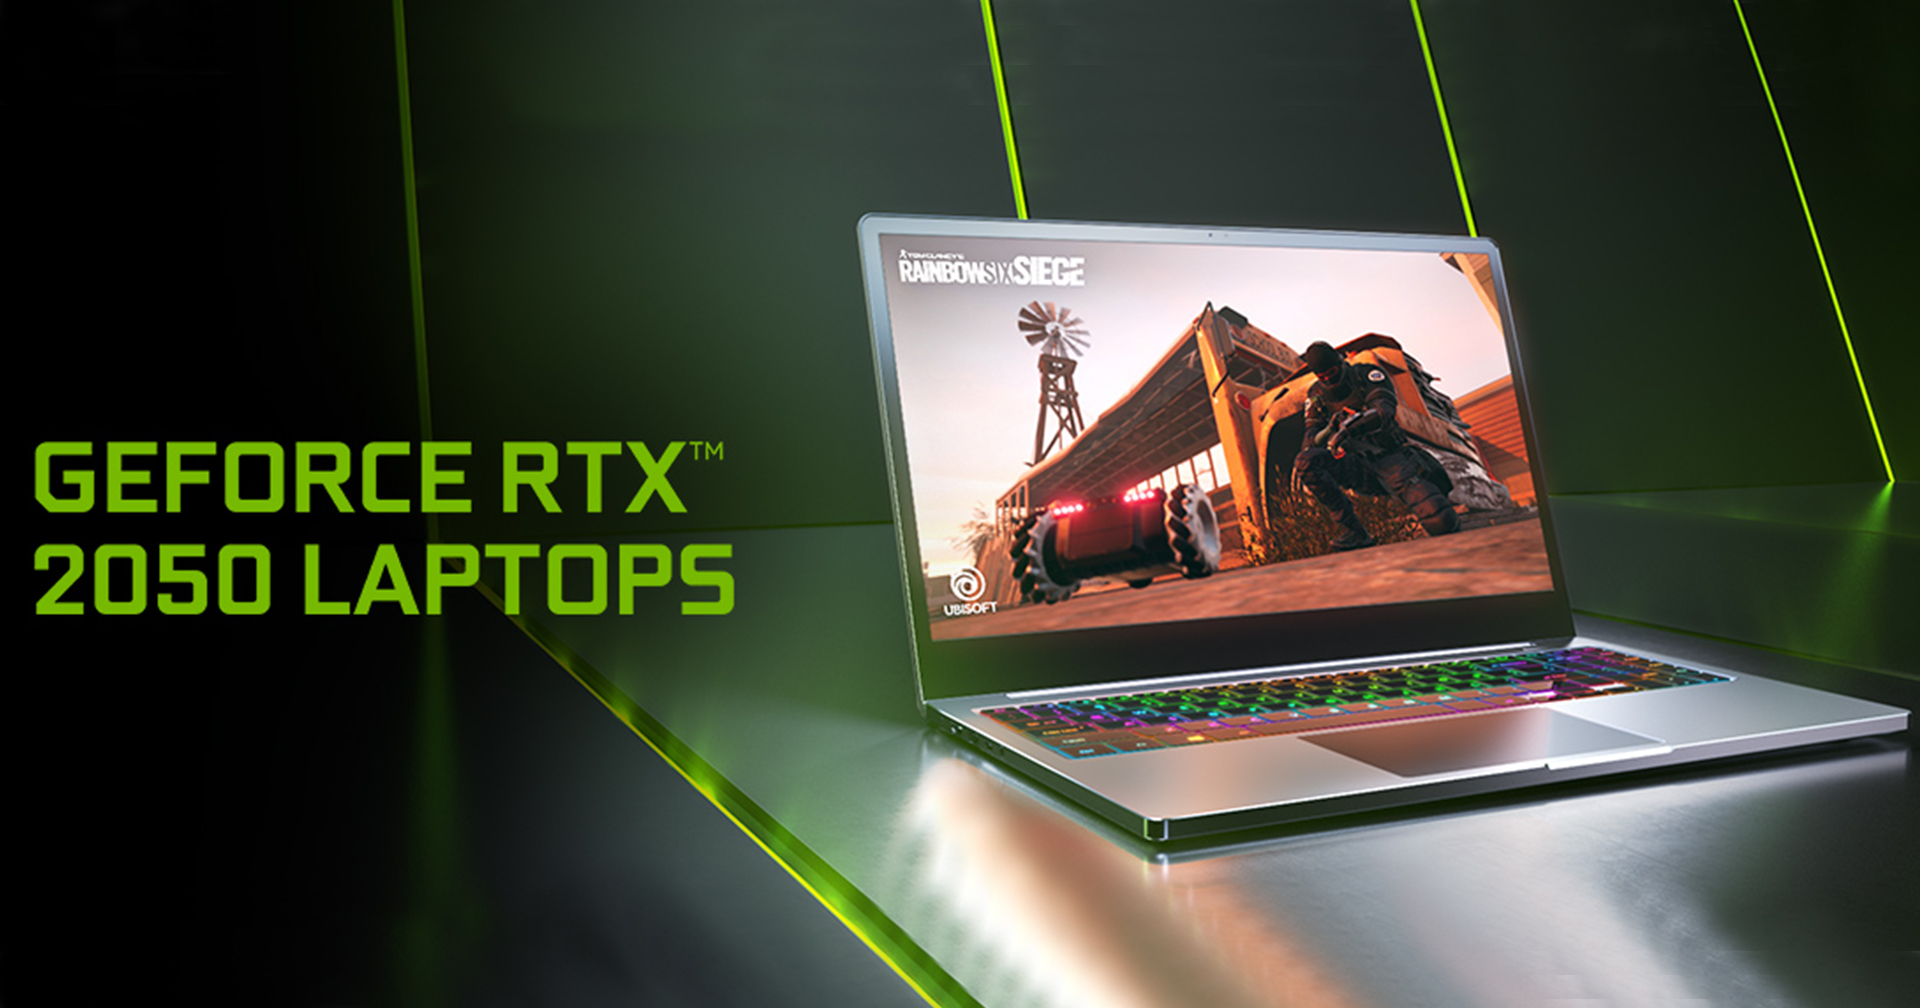 อย่างเป็นทางการแบ้ว!! Nvidia เปิดตัว RTX 2050 Laptop ตัวใหม่ สุดเทพ ชิป Turing